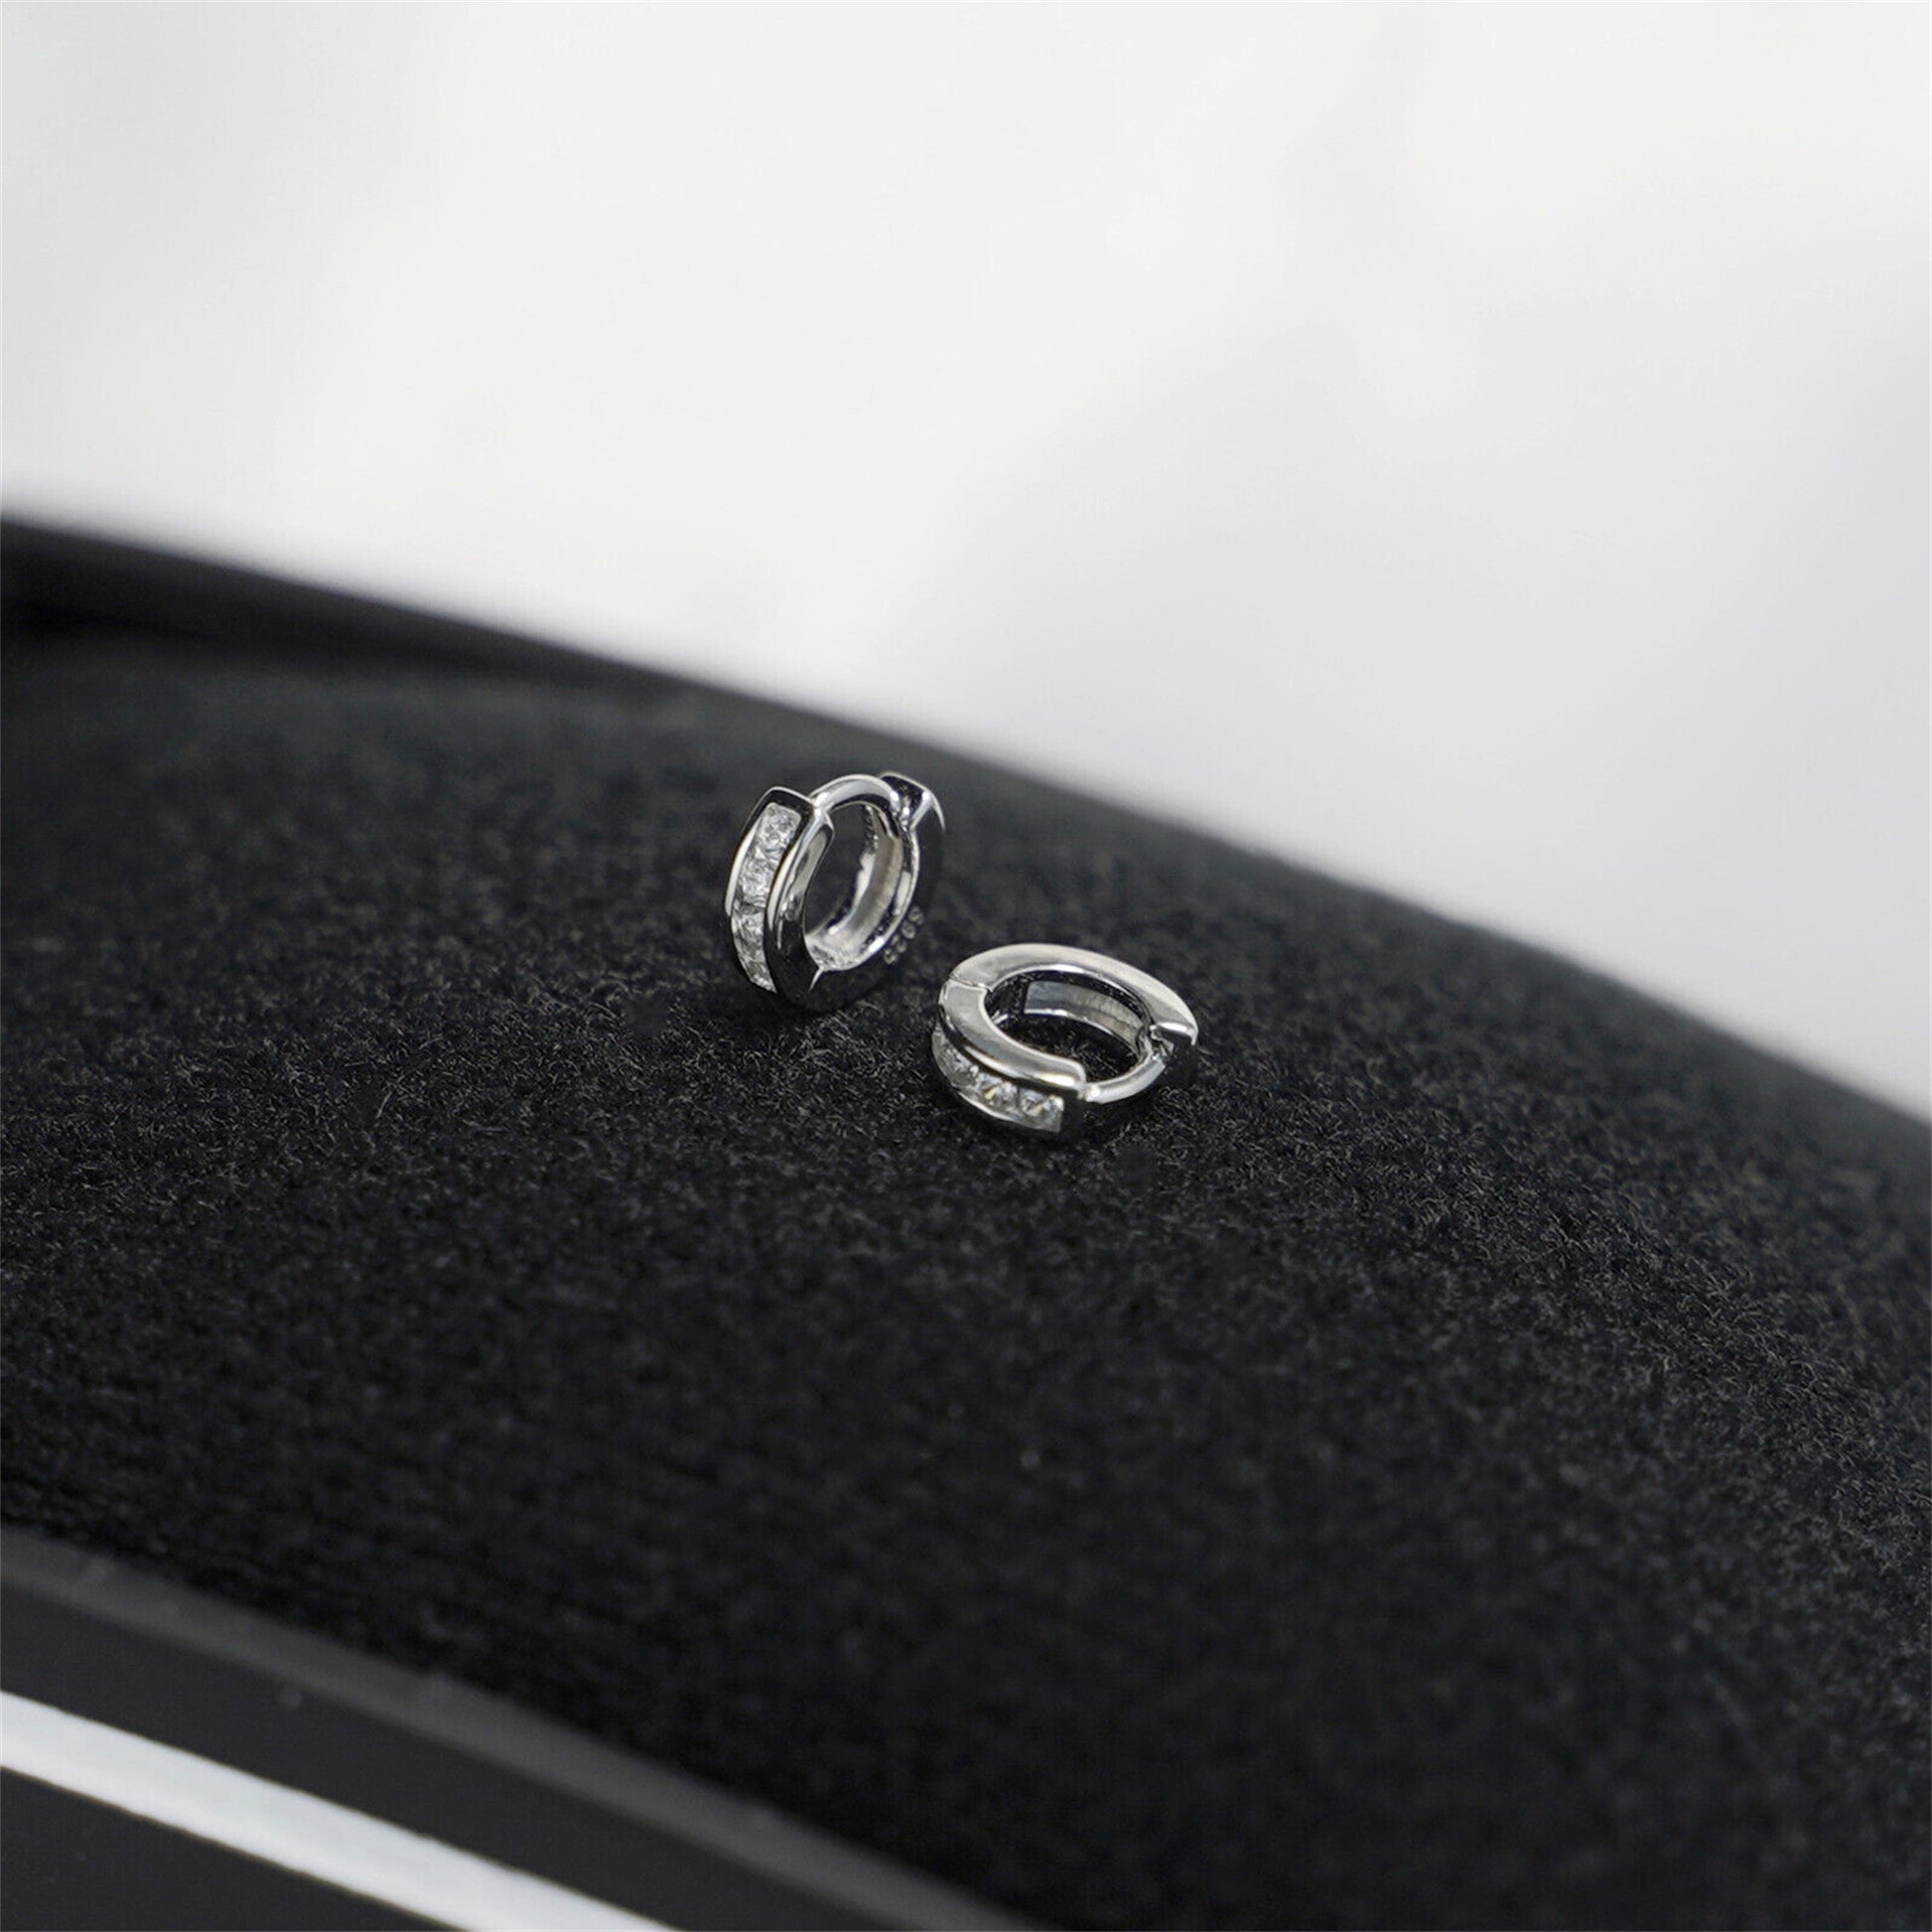 Sterling Silver Channel-Set CZ Huggie Hoop Earrings 5mm - sugarkittenlondon